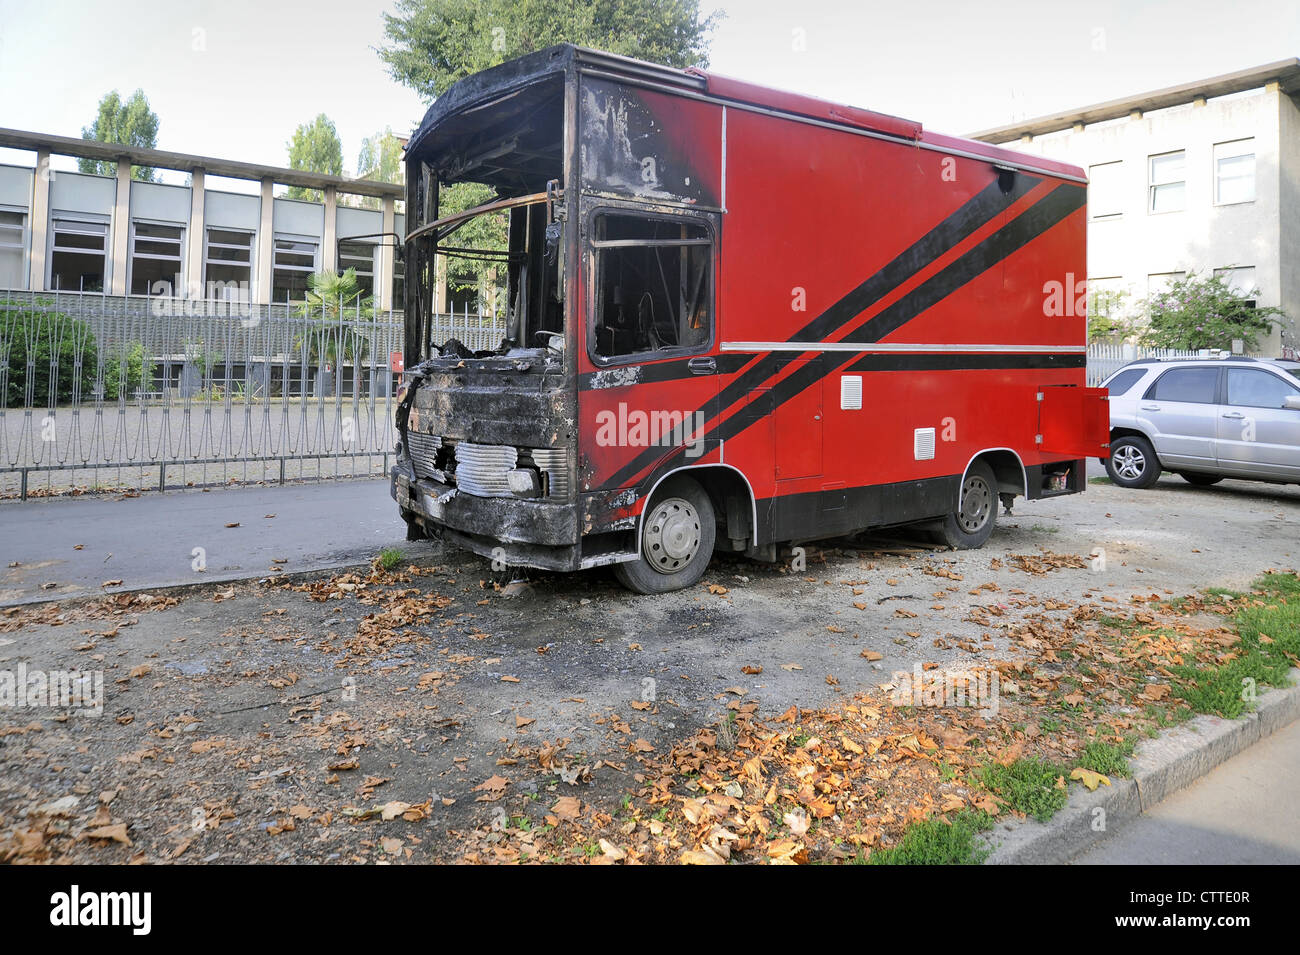 Mailand, essen Lkw durch Brandstiftung zerstört, weil der Eigentümer sich geweigert hatte, ein "Schutzgeld" zu einer Mafia Familie zu zahlen Stockfoto